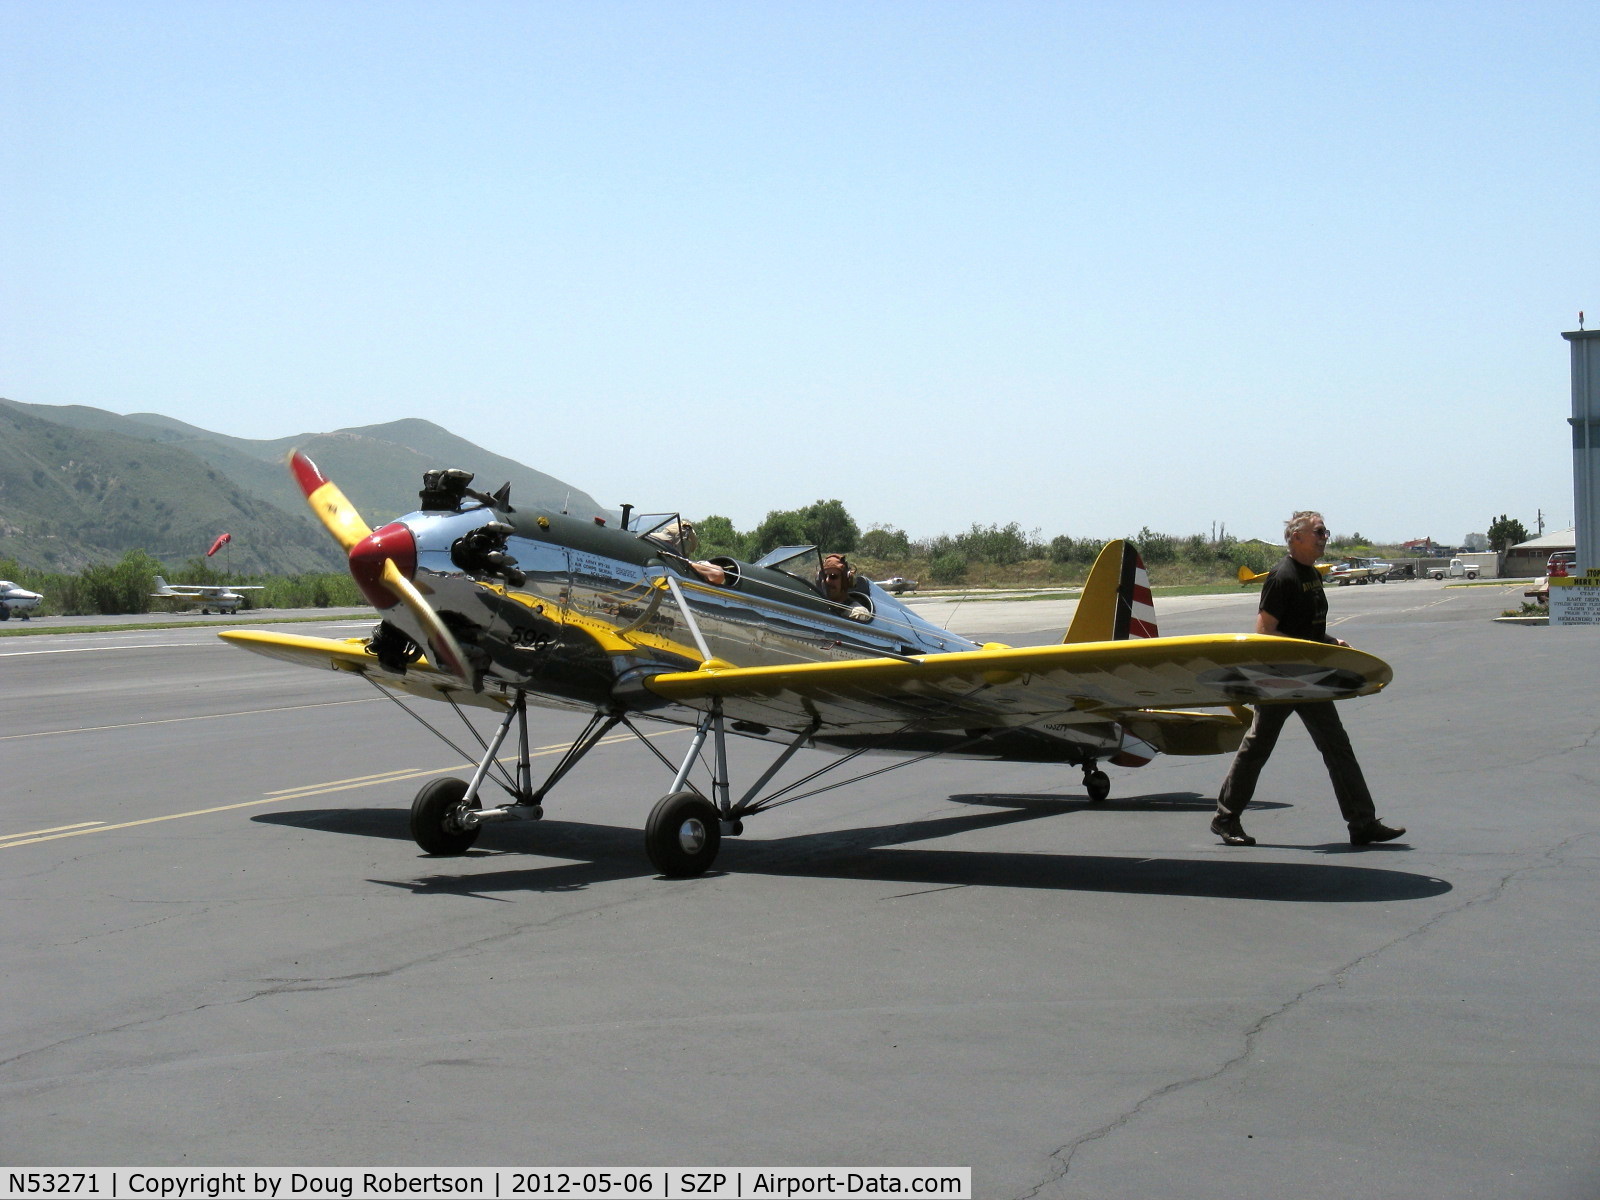 N53271, 1941 Ryan Aeronautical ST3KR C/N 1625, Ryan Aeronautical ST-3KR as PT-22, Kinner R5-540-1 160 Hp radial, engine idling